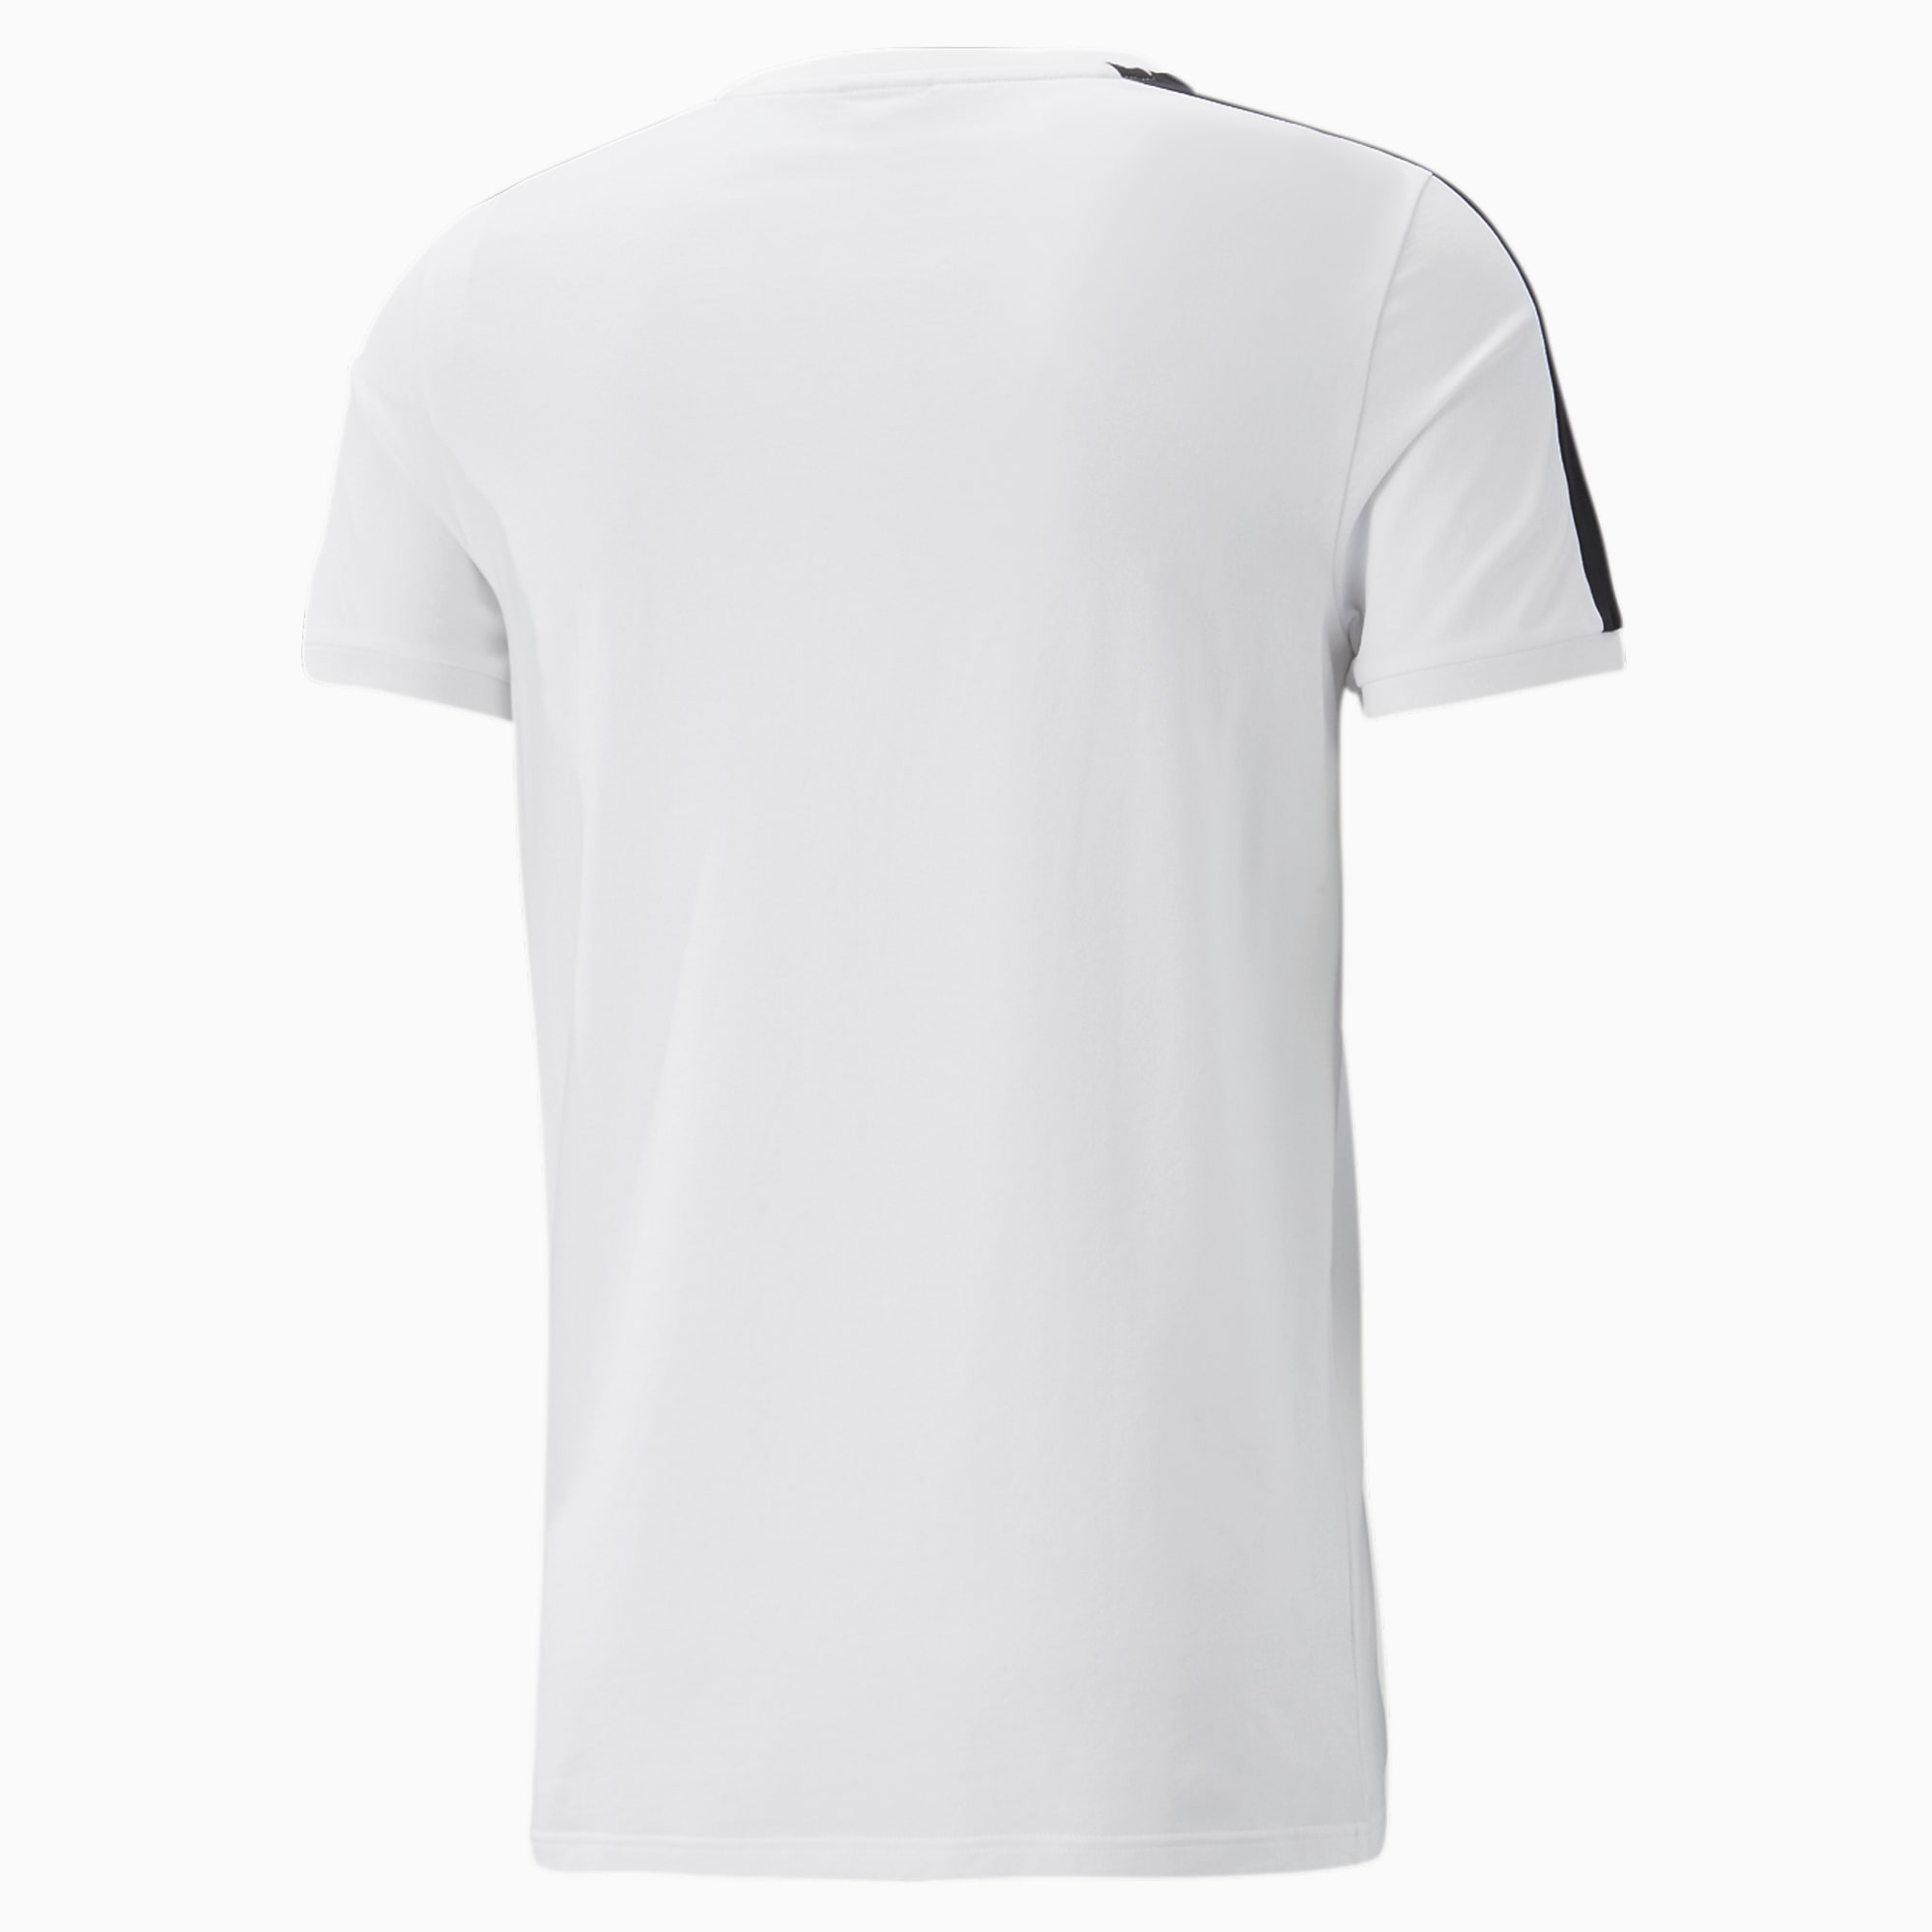 PUMA T7 Iconic T-Shirt Men, White, Size XL, Clothing